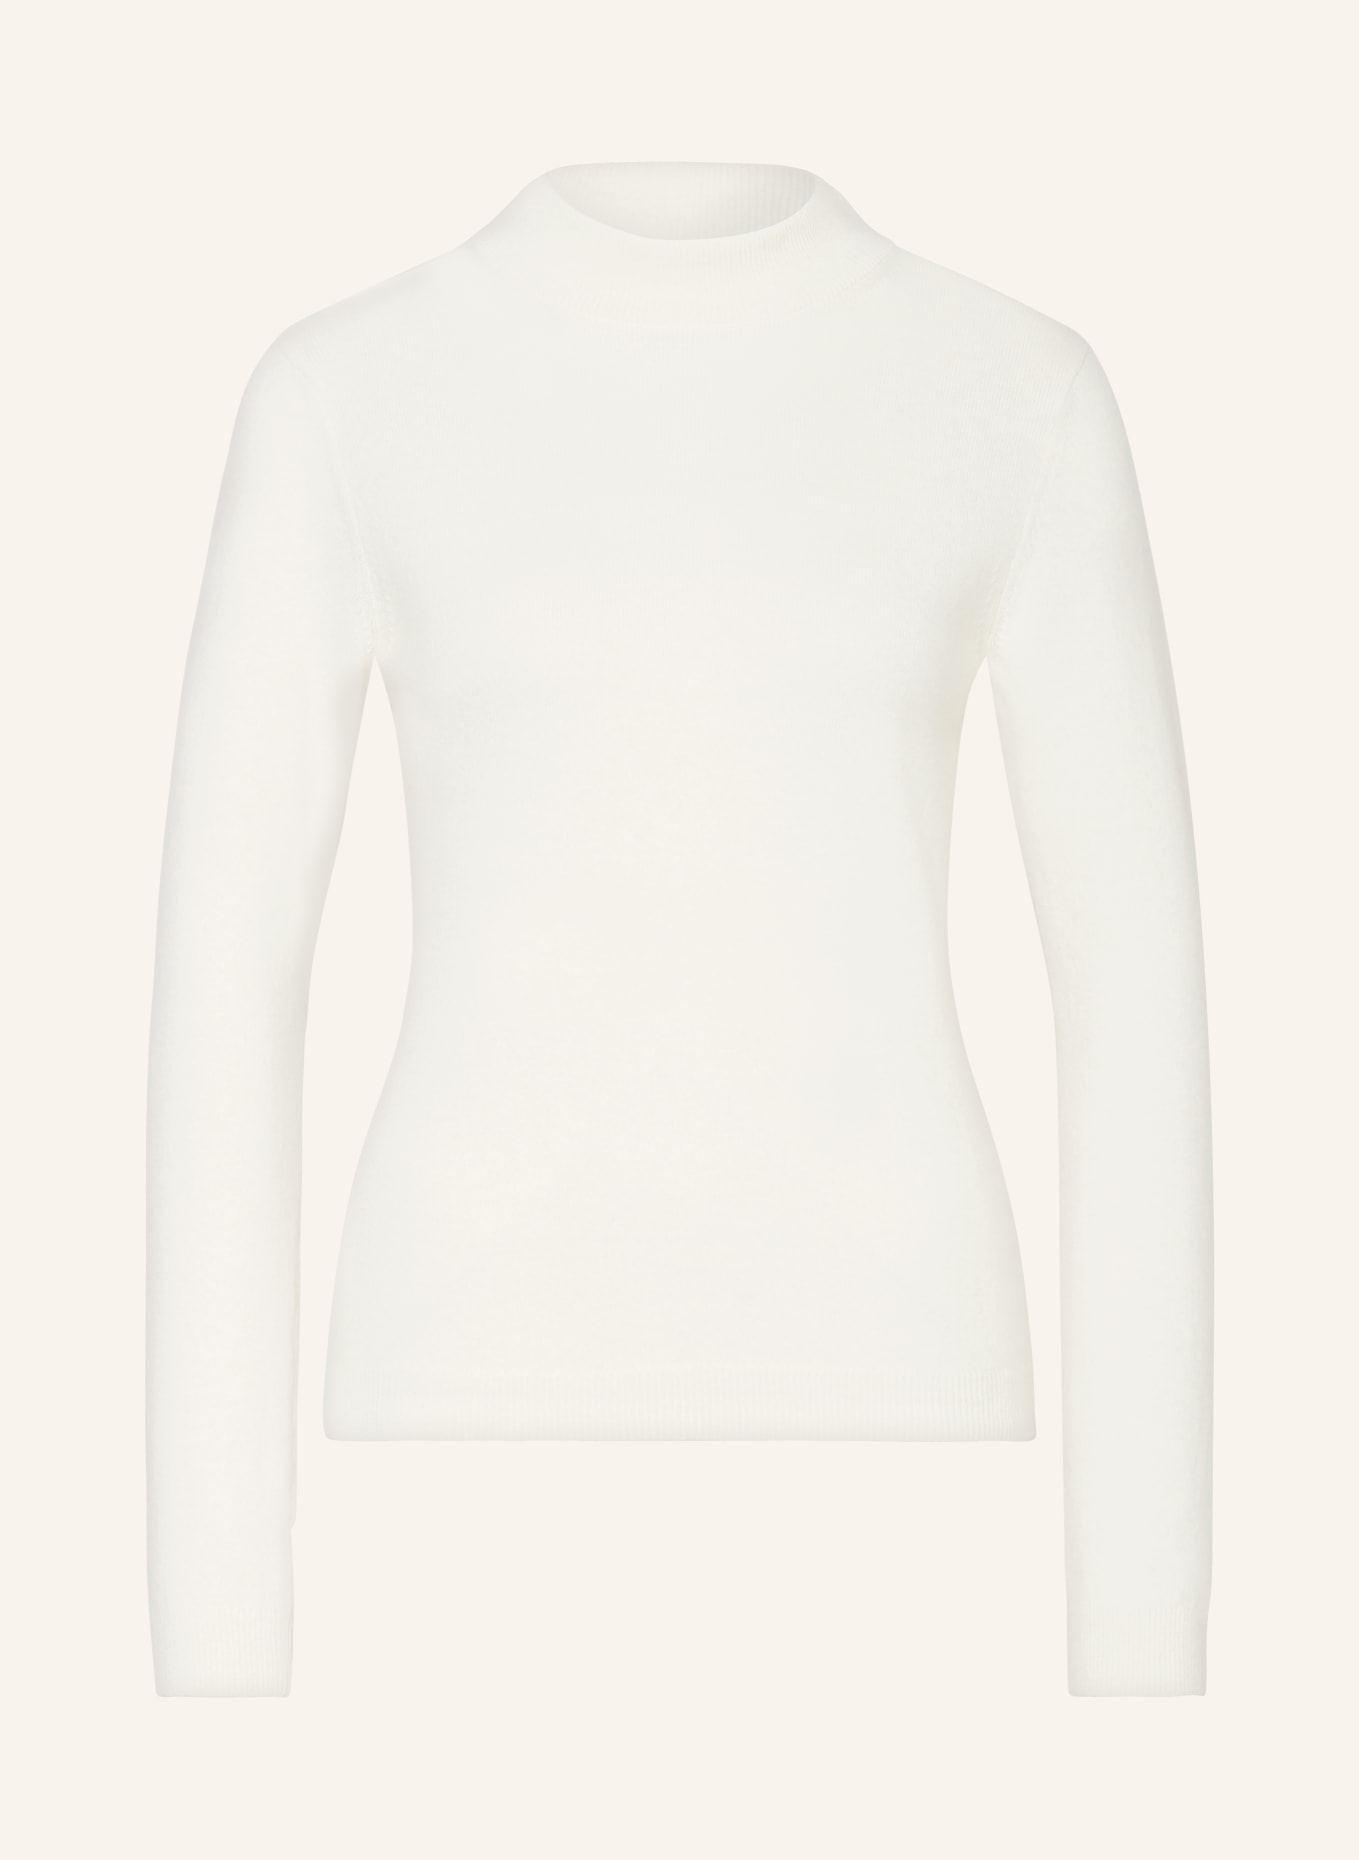 VANILIA Turtleneck sweater, Color: ECRU (Image 1)